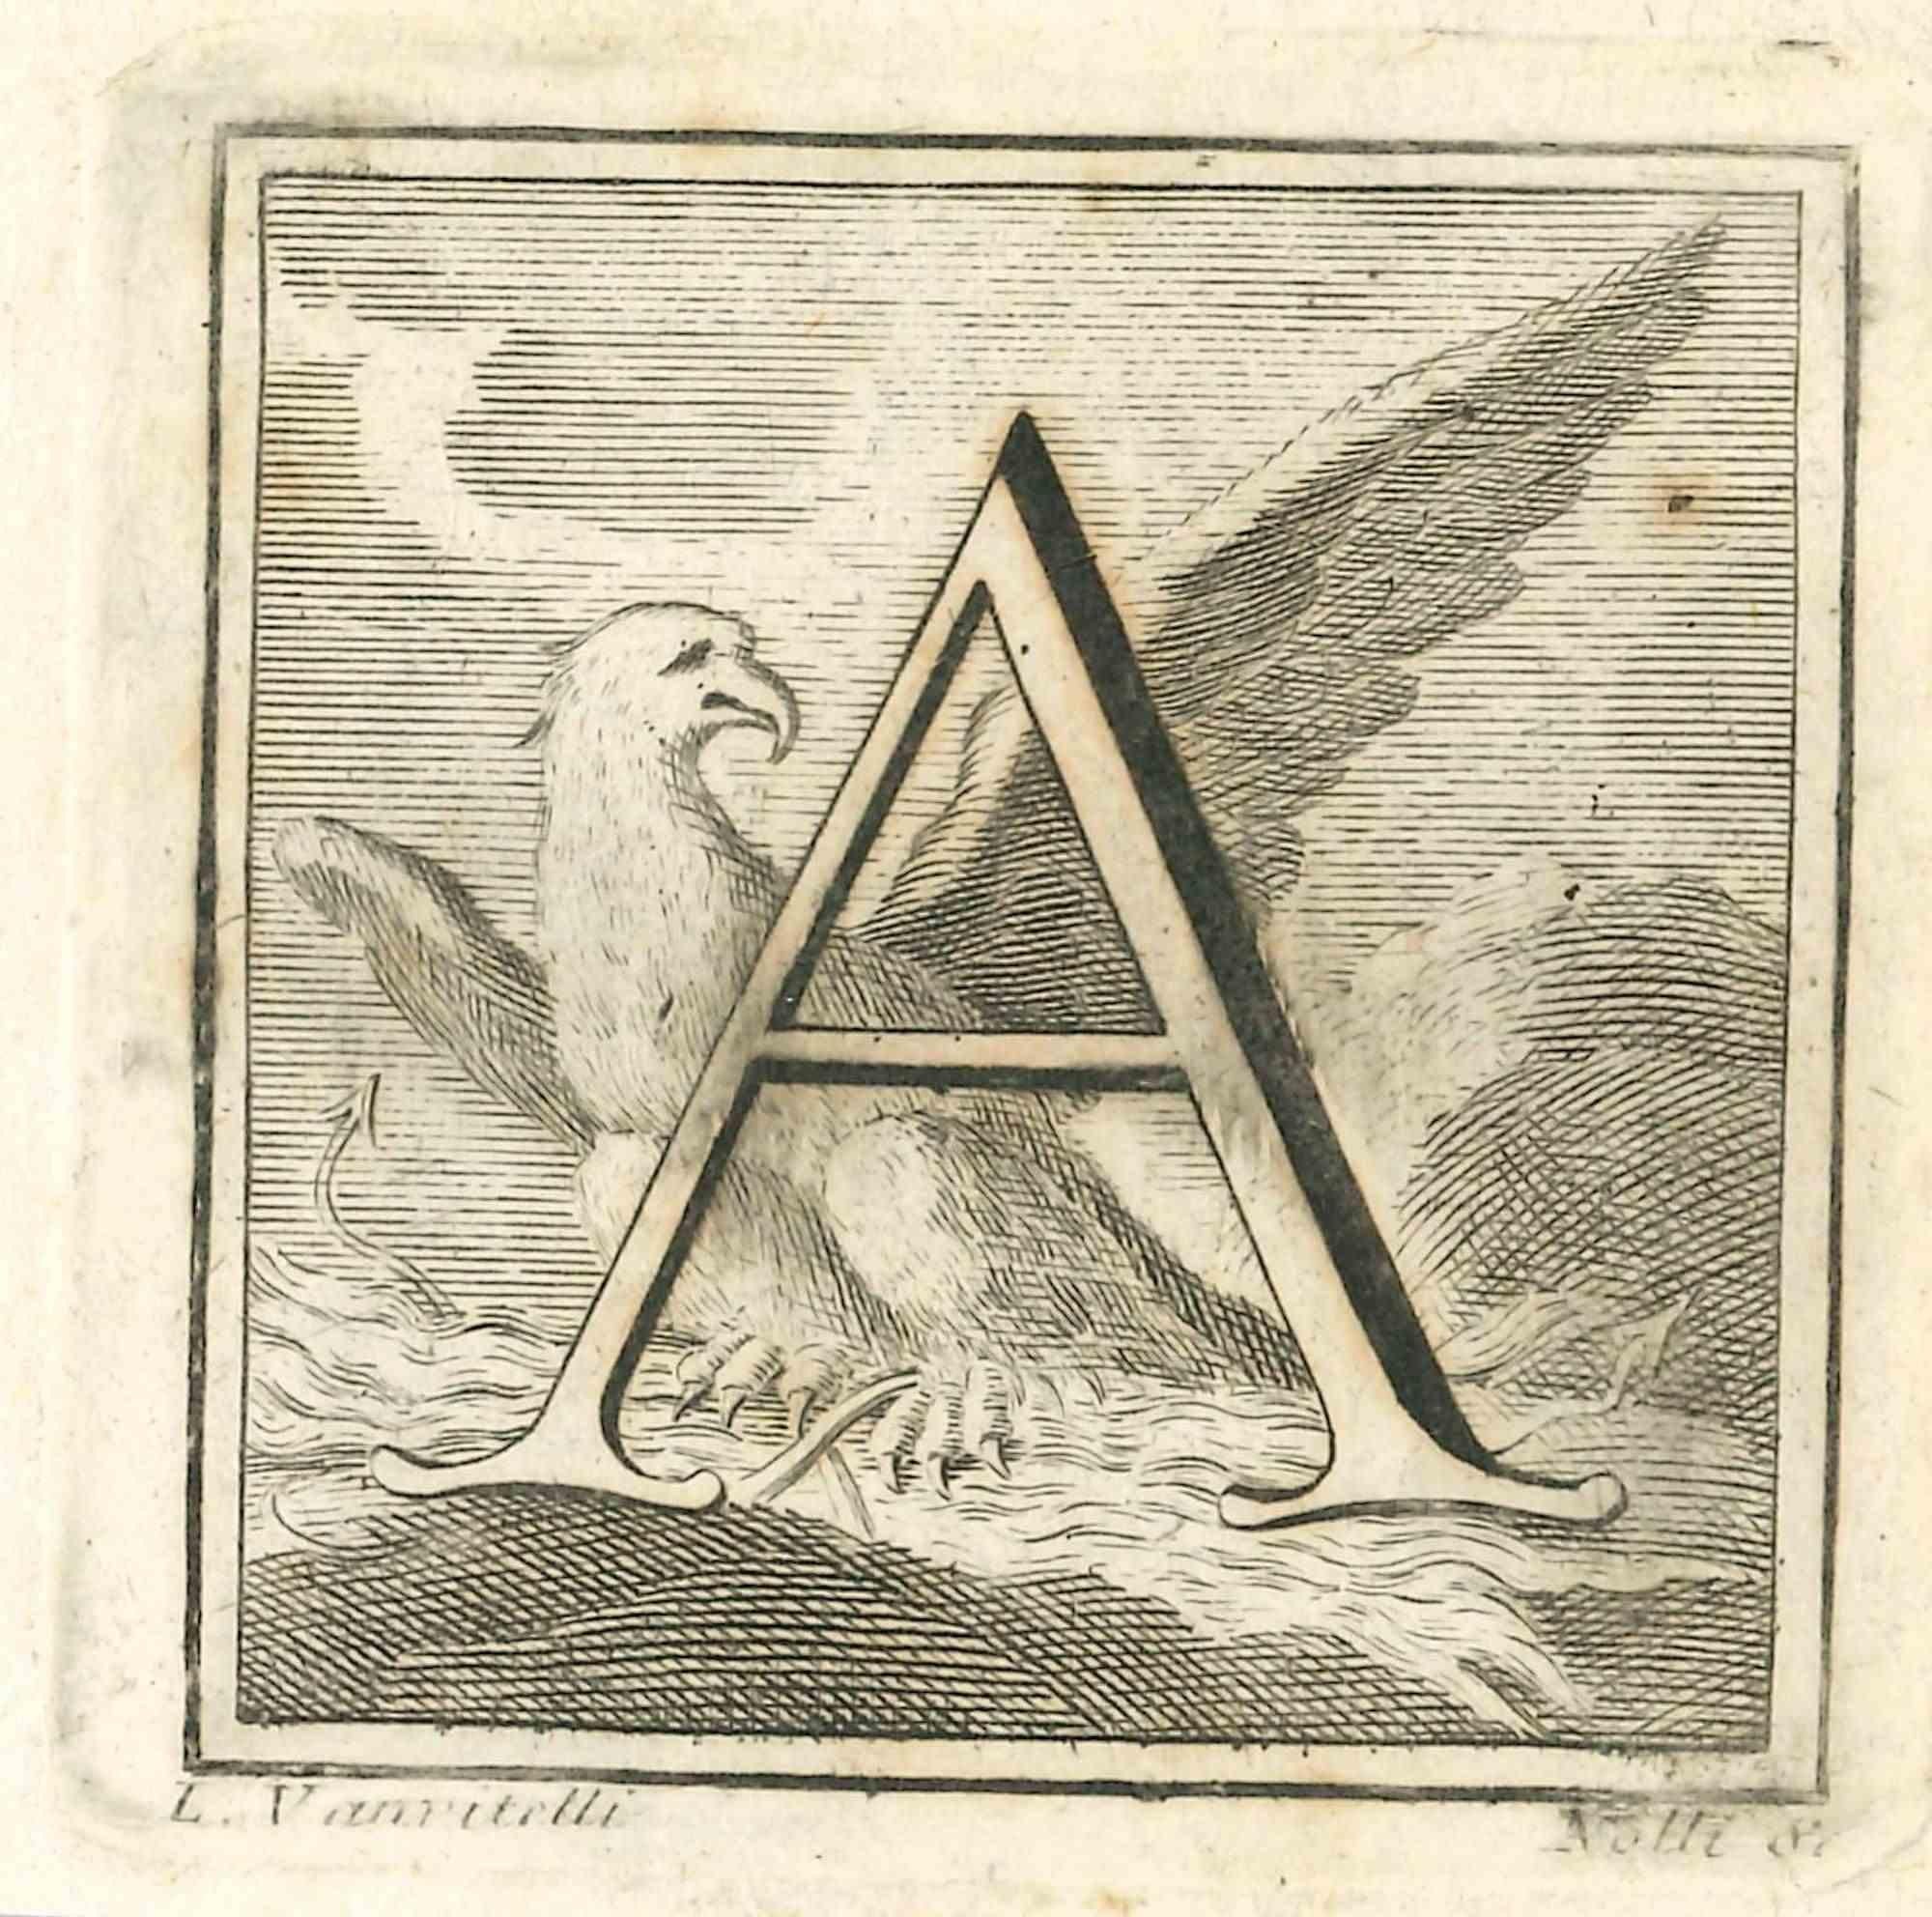 Lettre de l'alphabet A,  de la série "Antiquités d'Herculanum", est une gravure sur papier réalisée par Luigi Vanvitelli au 18ème siècle.

Bonnes conditions.

La gravure appartient à la suite d'estampes "Antiquités d'Herculanum exposées" (titre